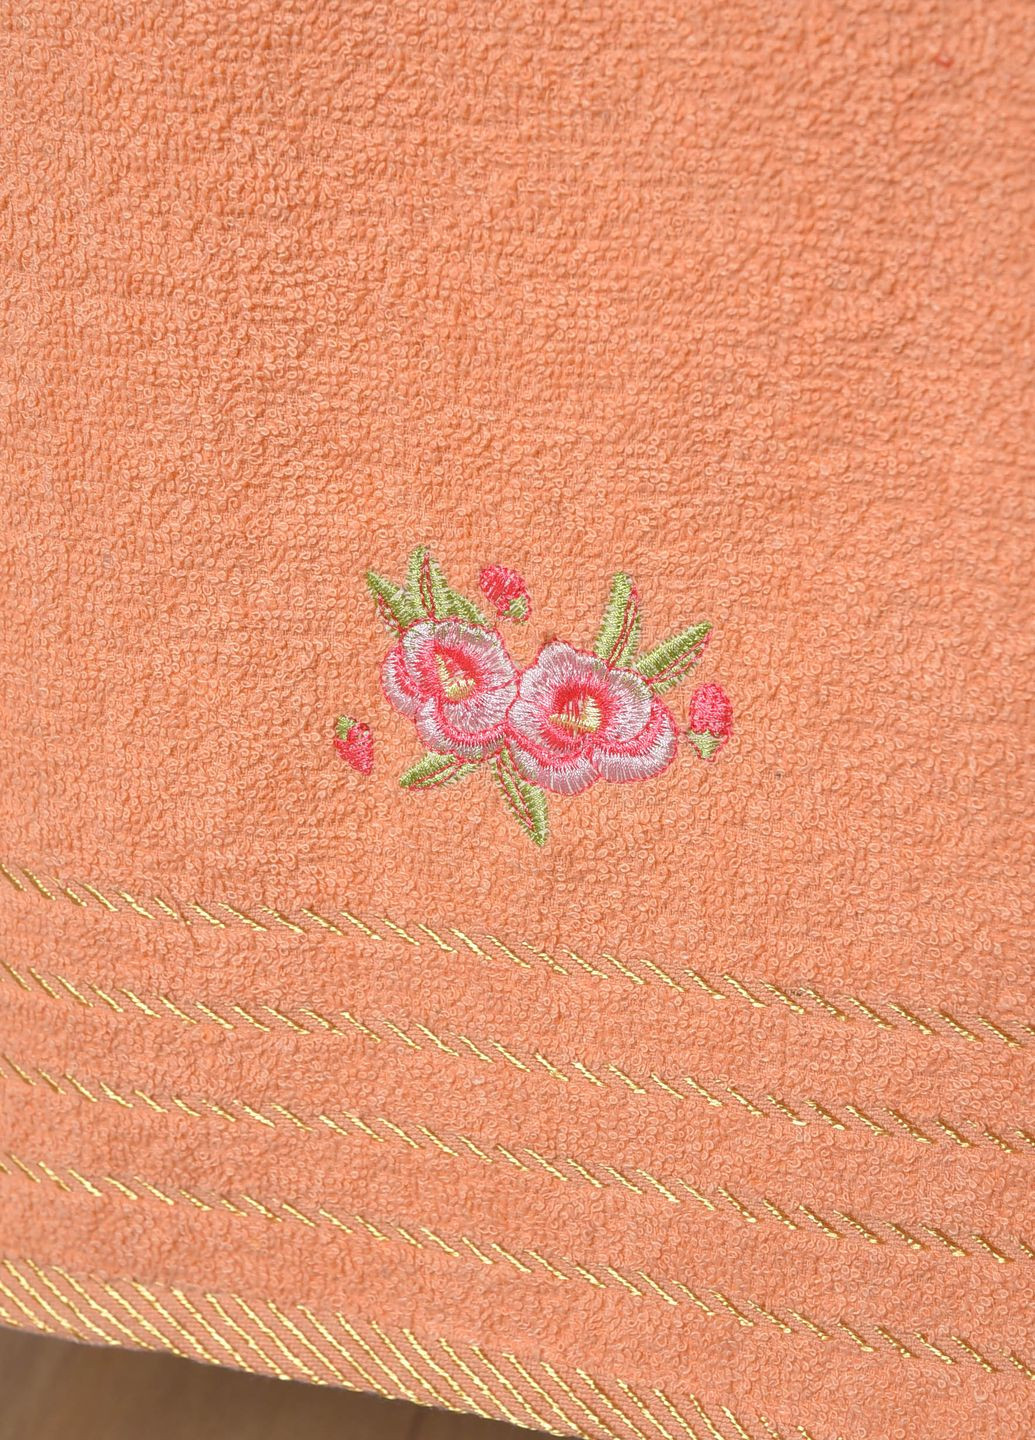 Let's Shop полотенце для лица махровое персикового цвета однотонный персиковый производство - Турция